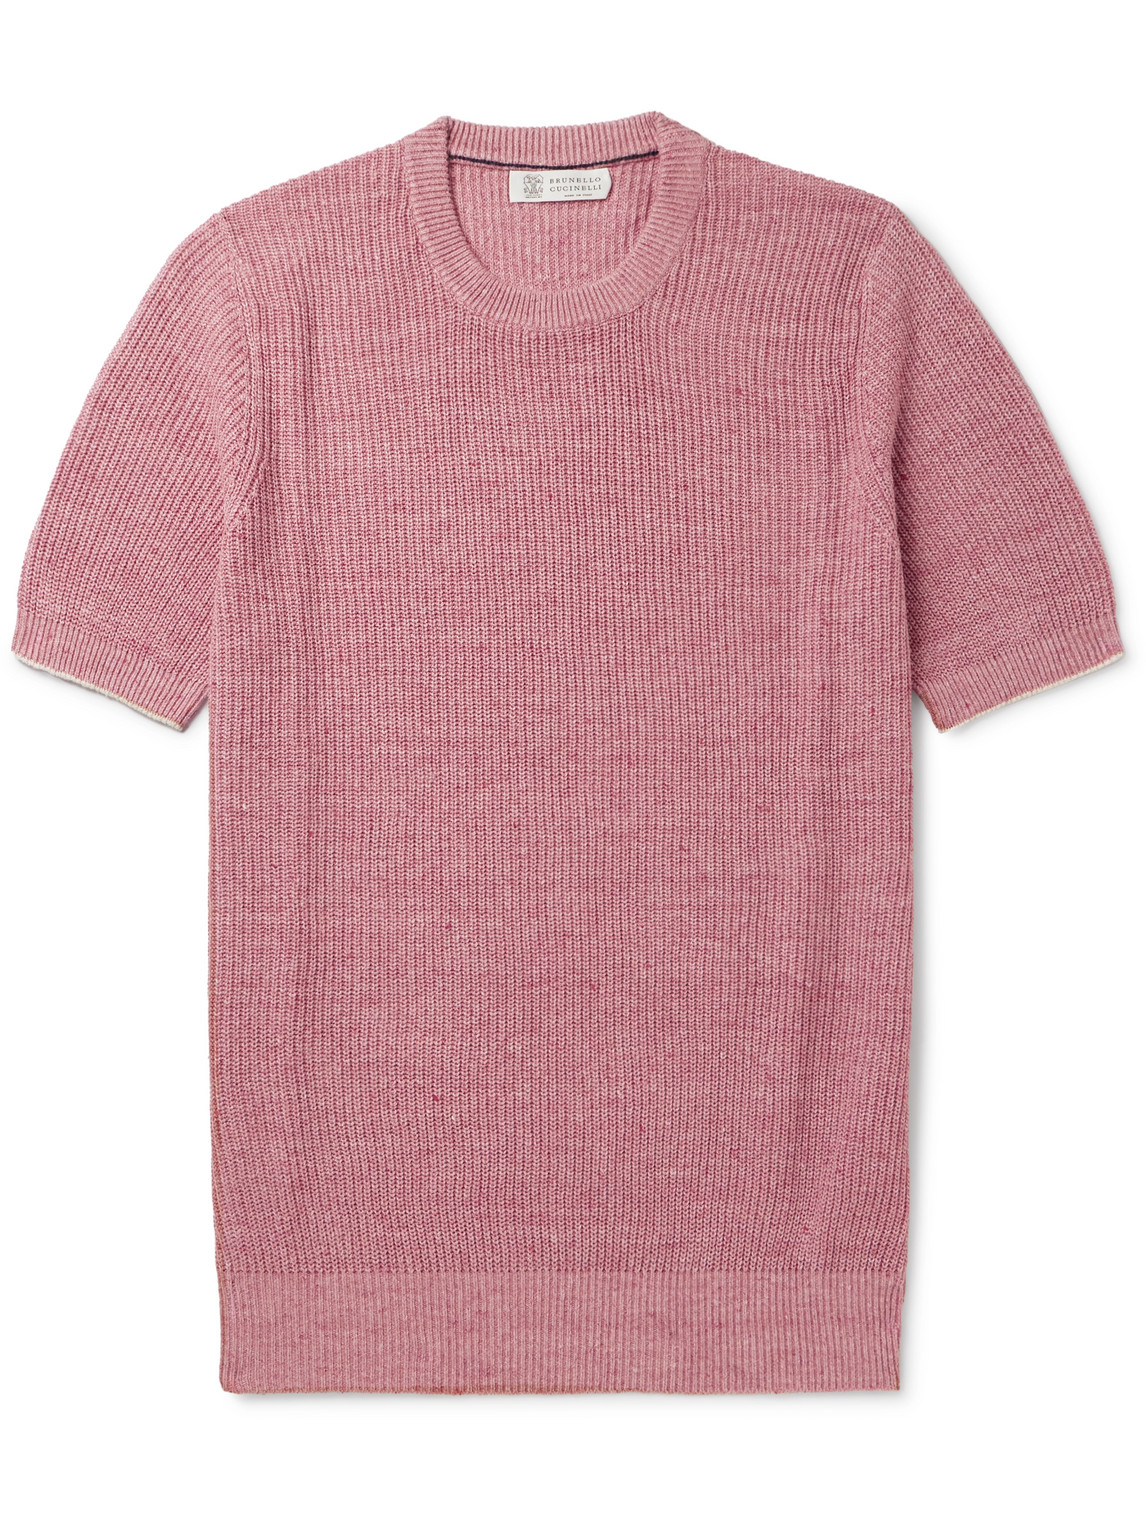 Brunello Cucinelli - Ribbed Linen and Cotton-Blend T-Shirt - Men - Pink - IT 52 von Brunello Cucinelli